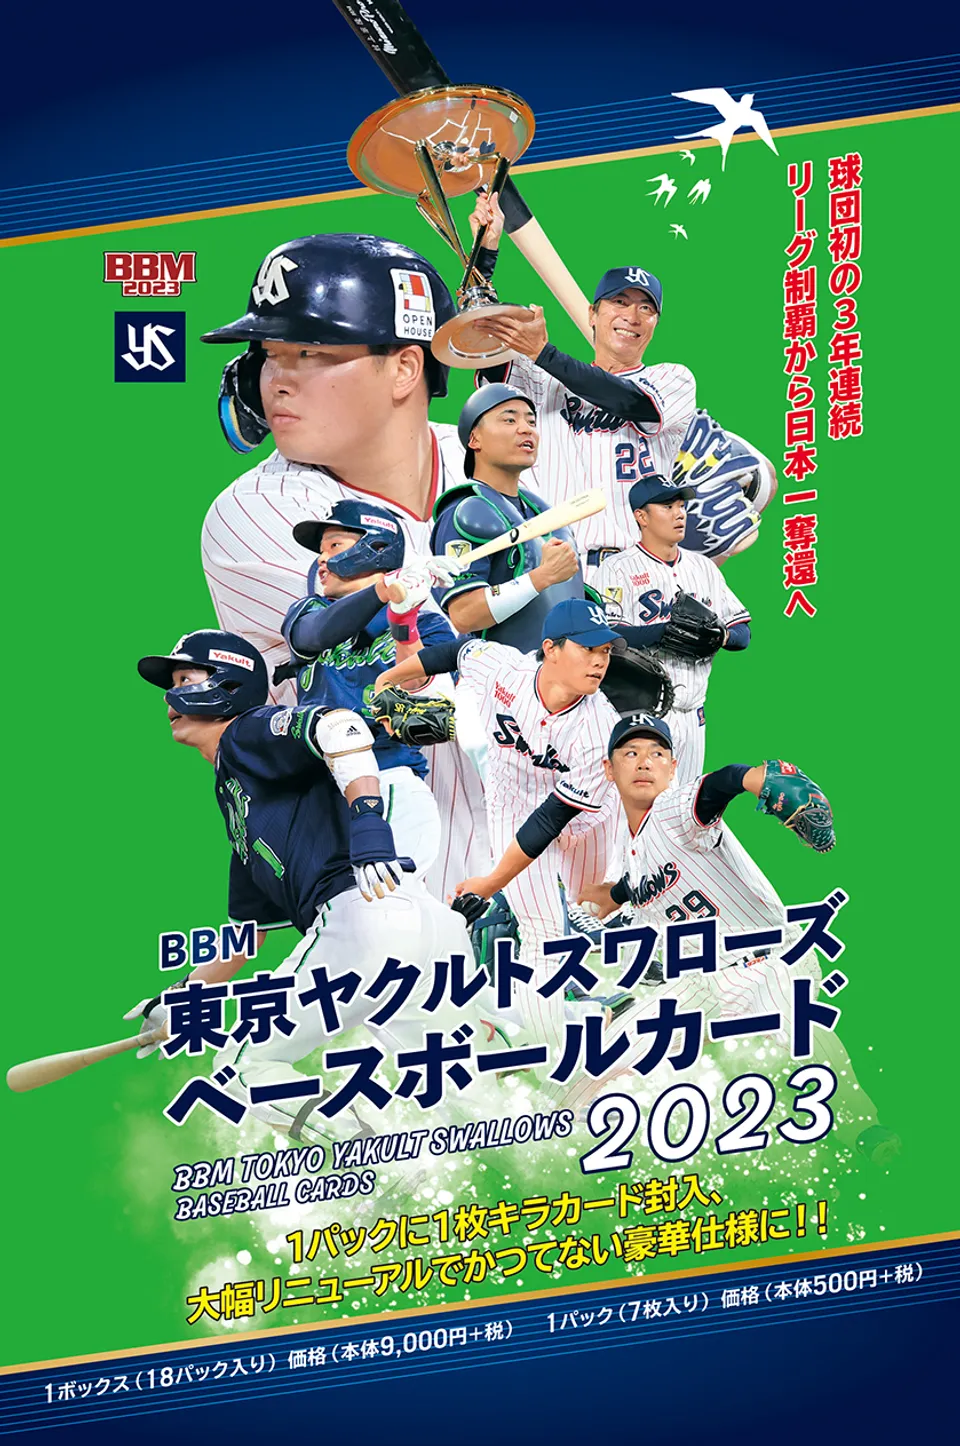 ⚾ BBM 東京ヤクルトスワローズ ベースボールカード 2023【製品情報 